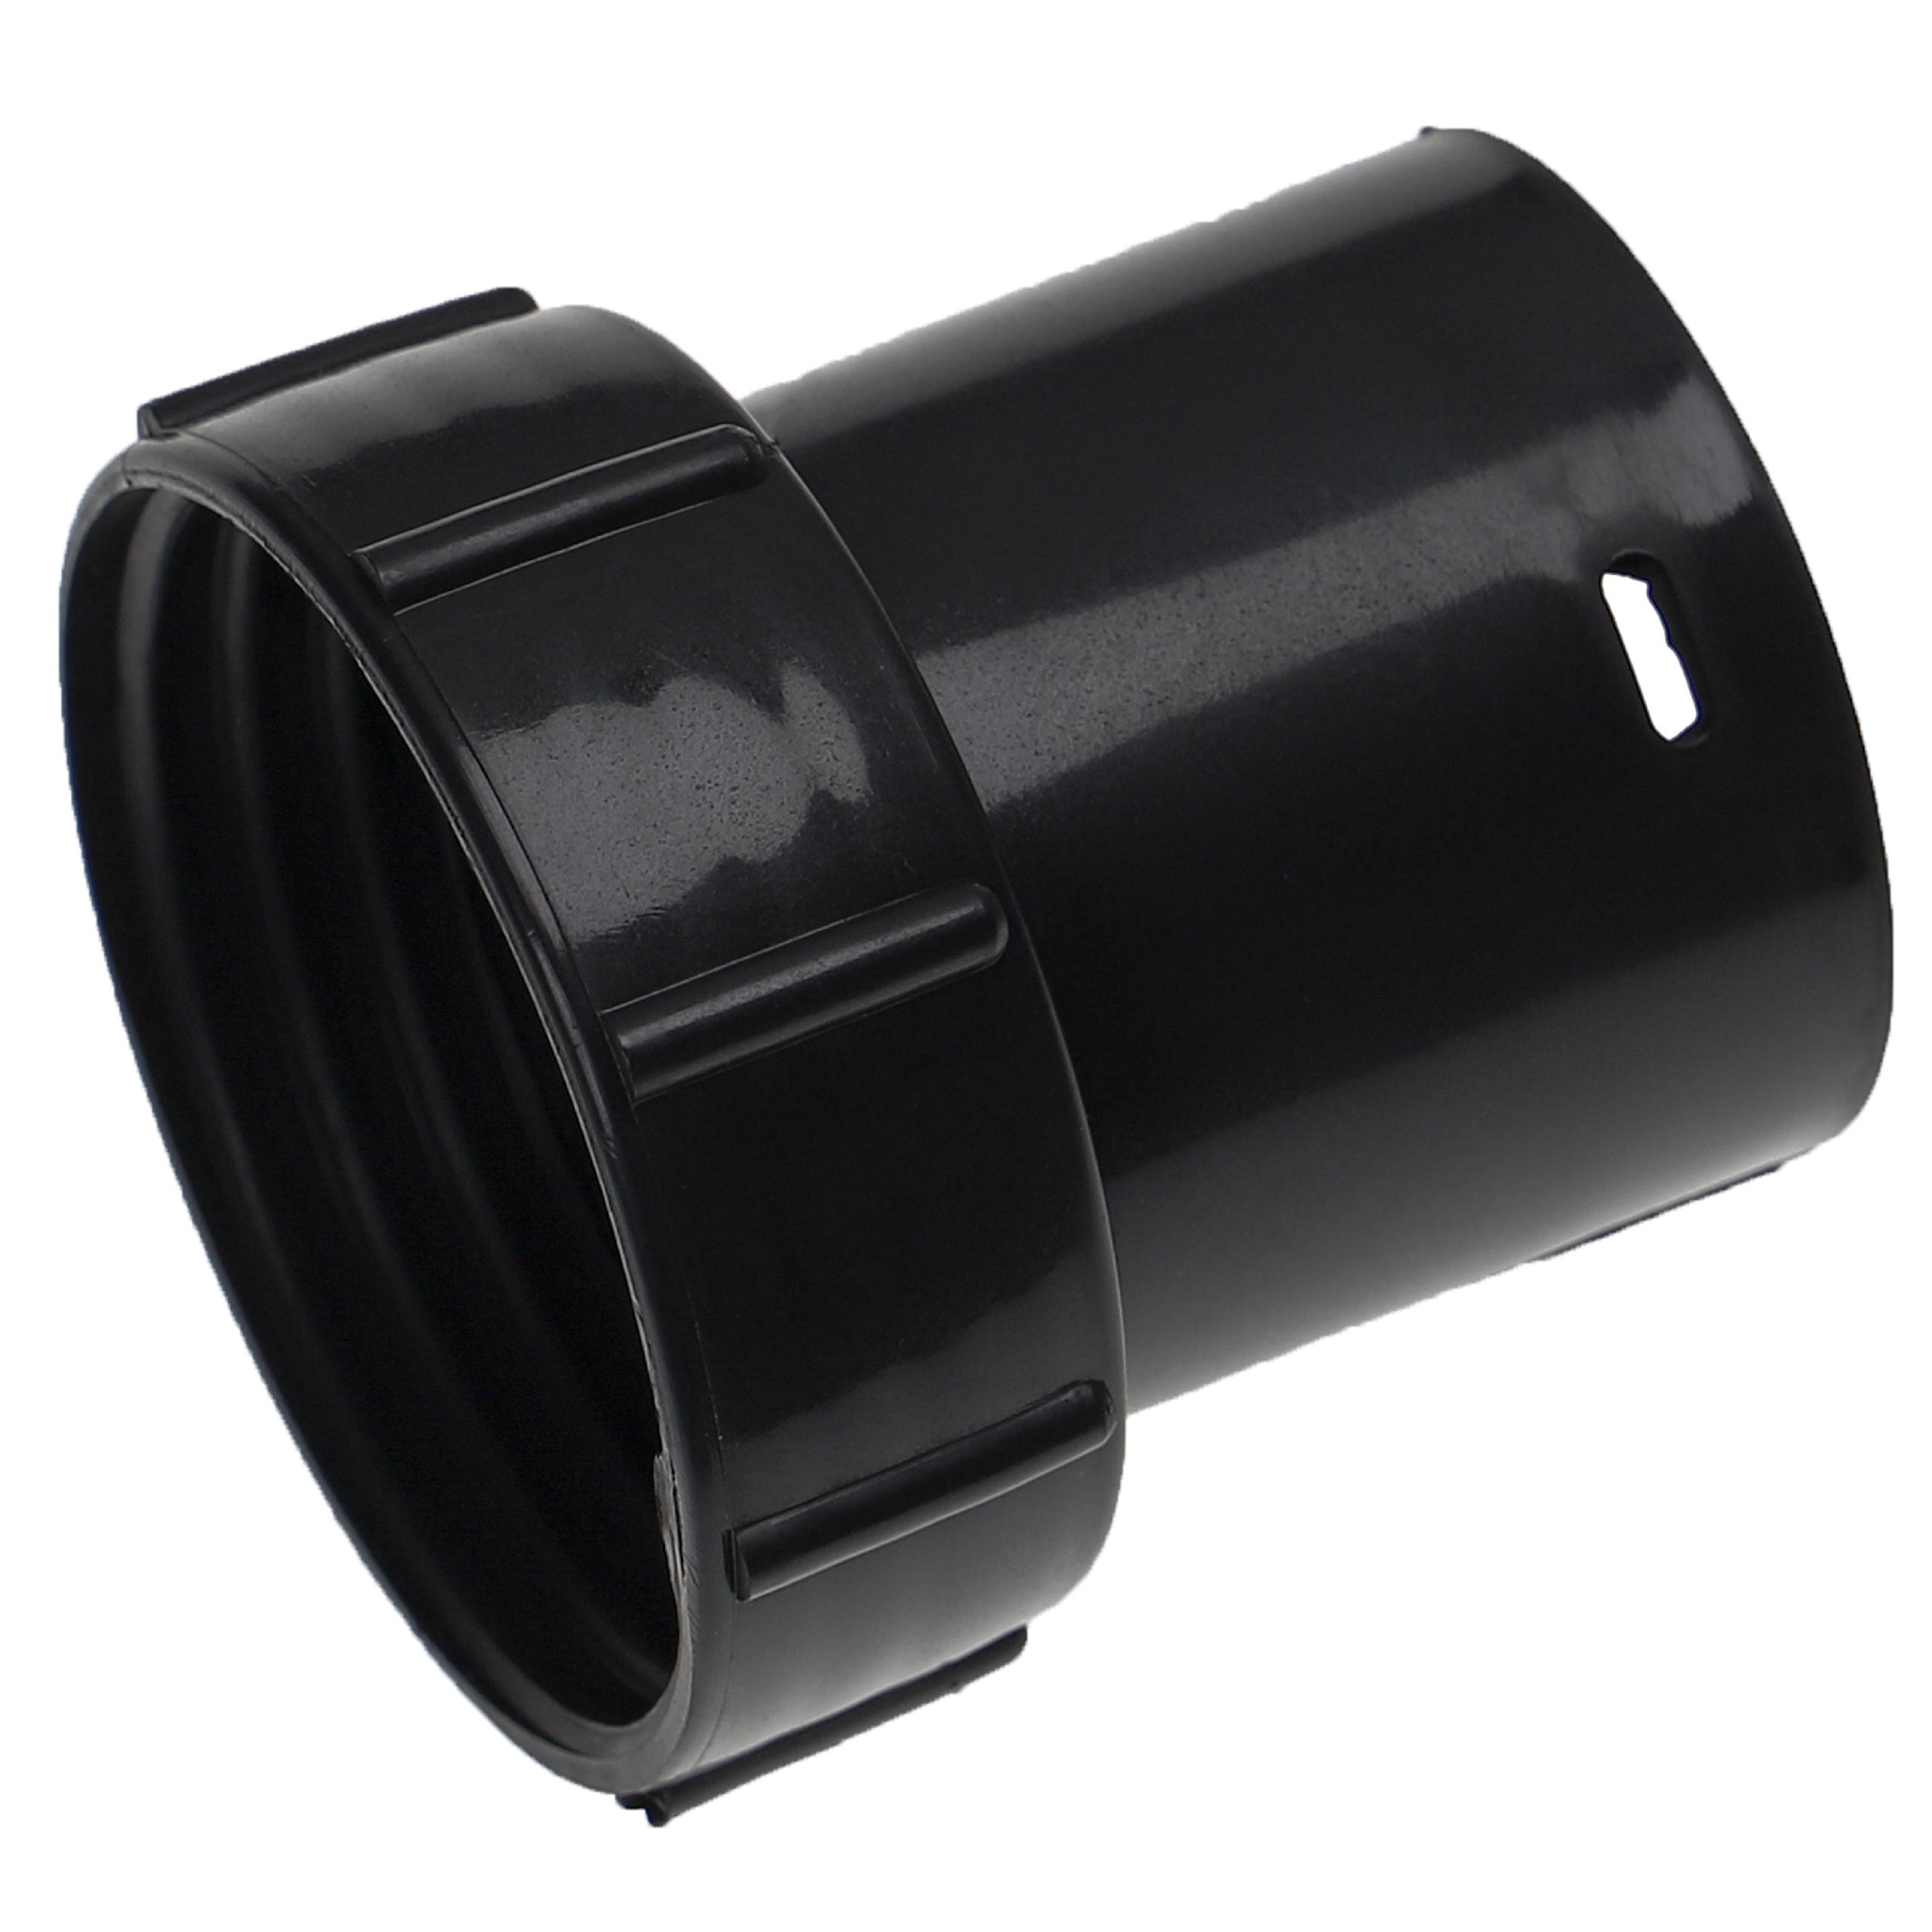 Adaptateur de tuyau pour aspirateur Numatic / Nilfisk Charles et autres - 32 mm rond, plastique